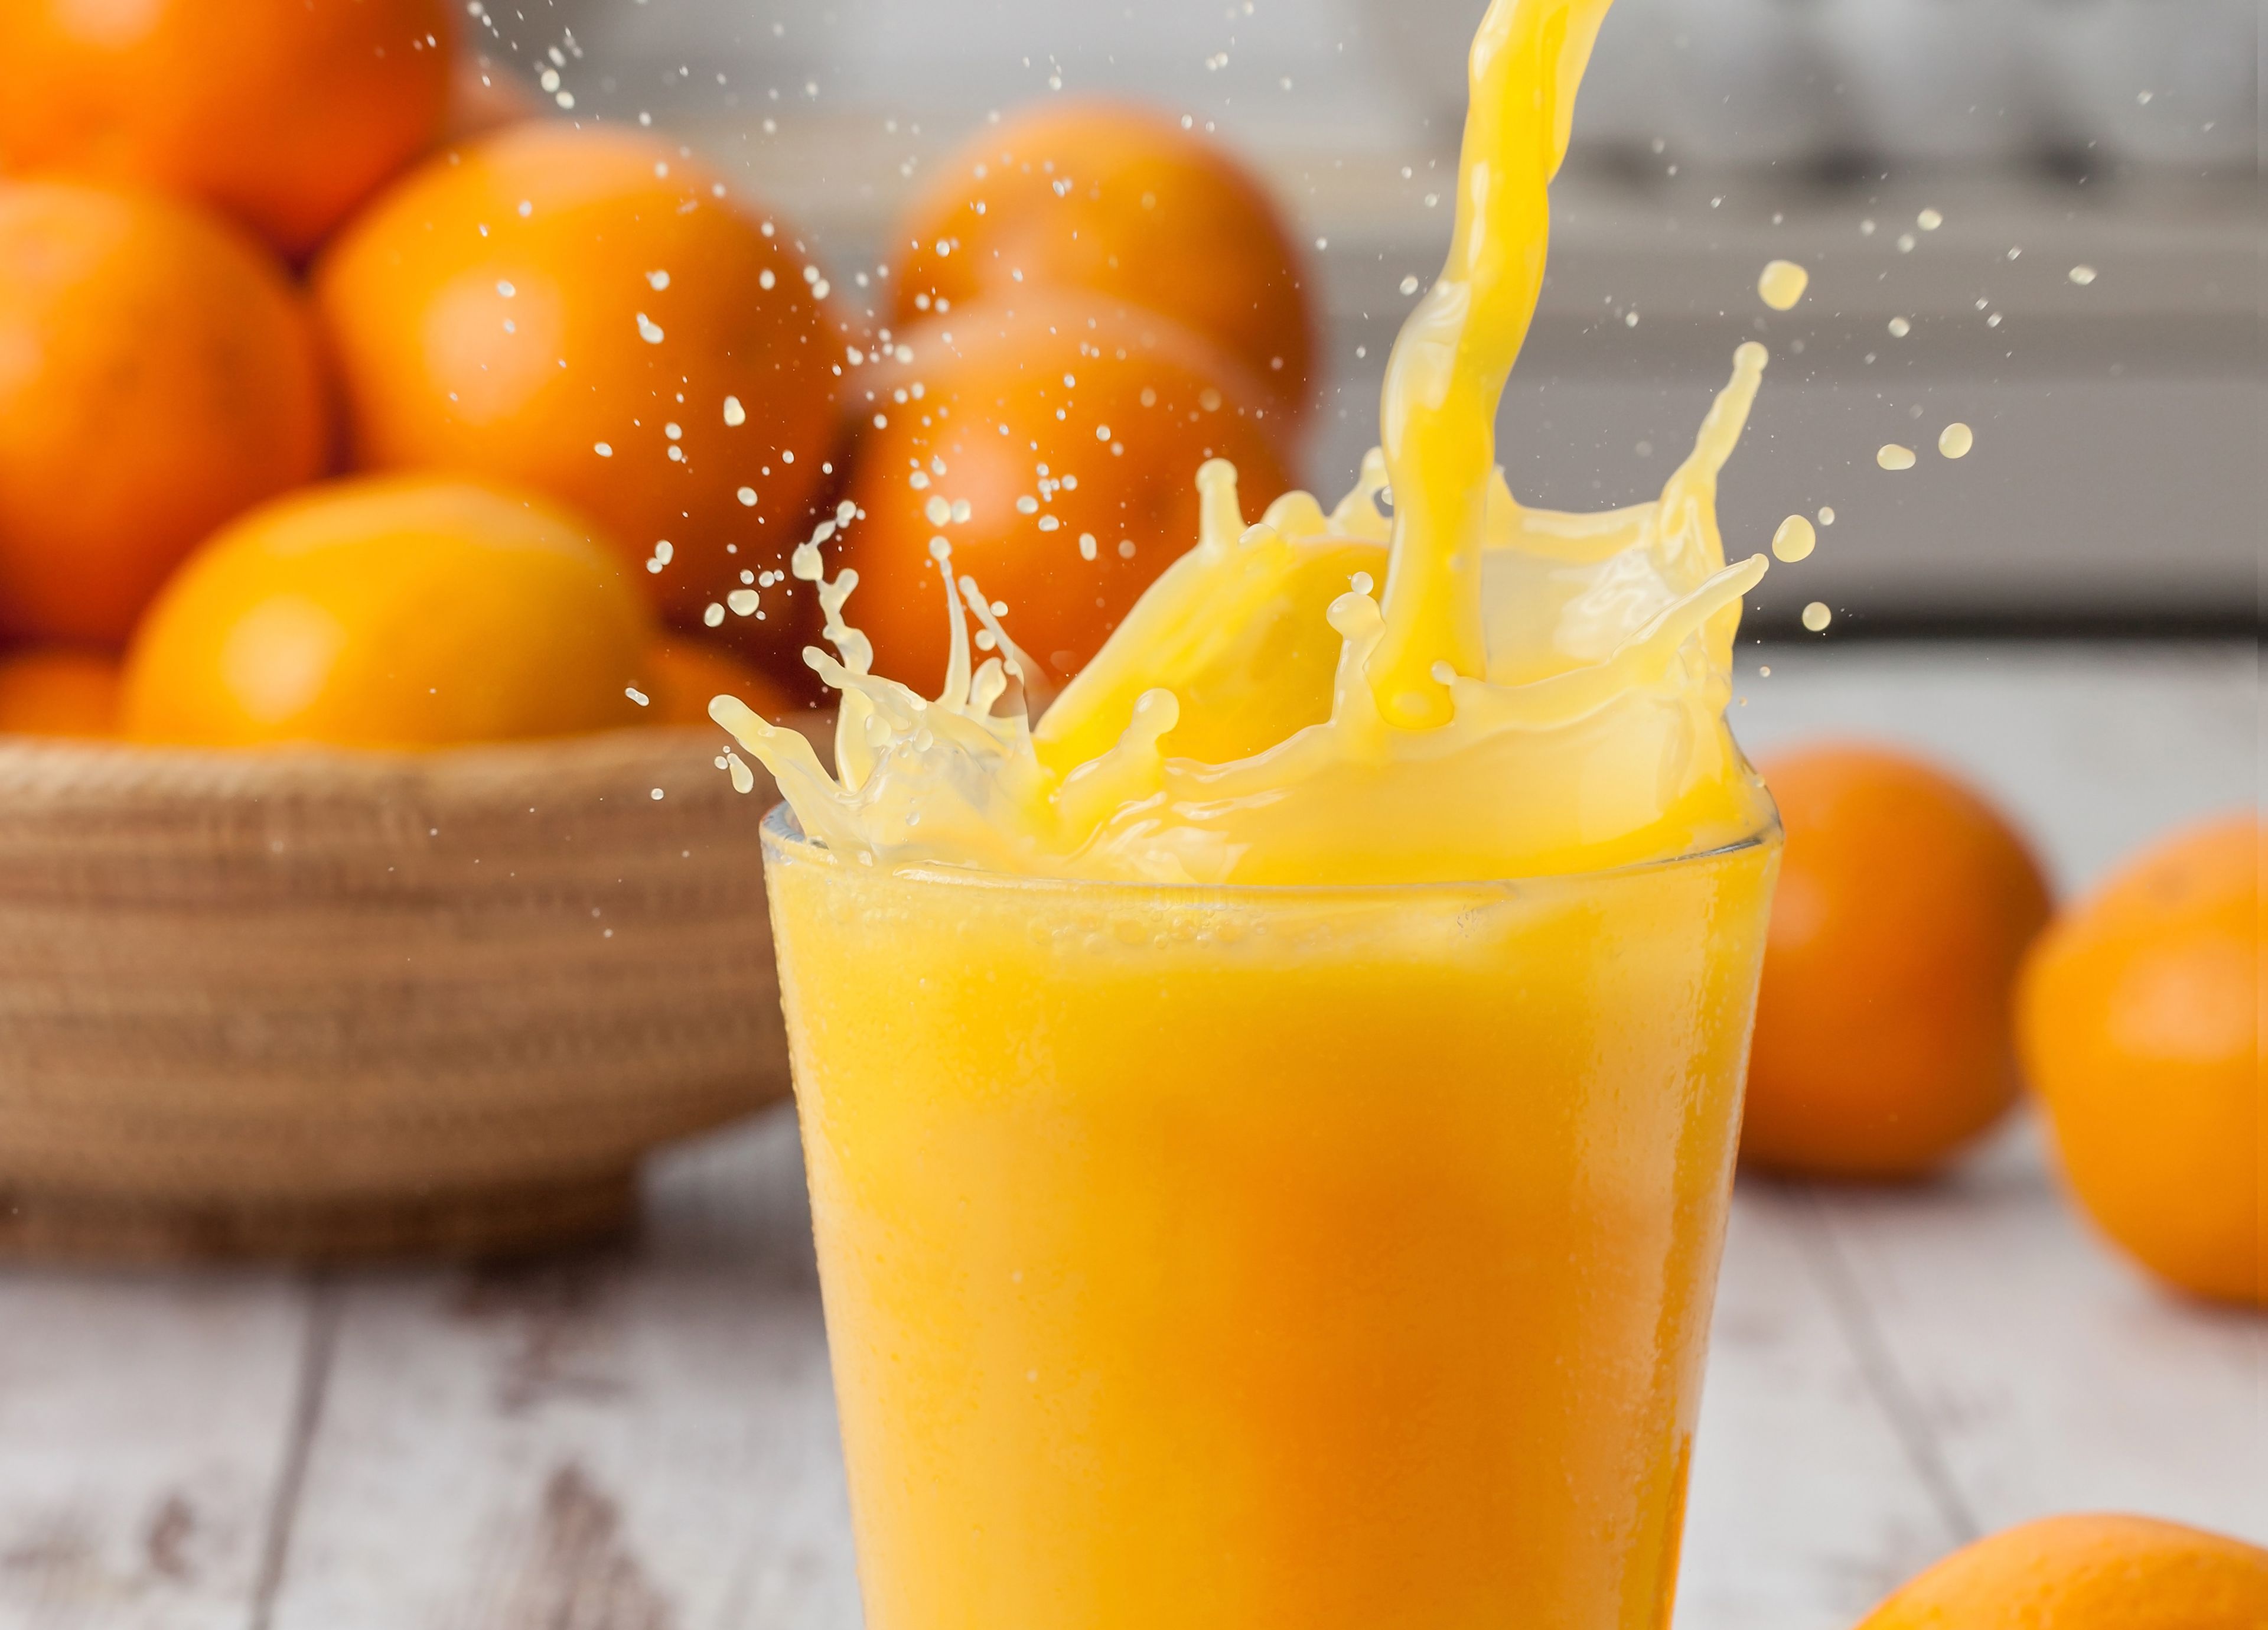 Cómo elegir un exprimidor de naranjas eléctrico para hacer zumo natural -  Casacochecurro